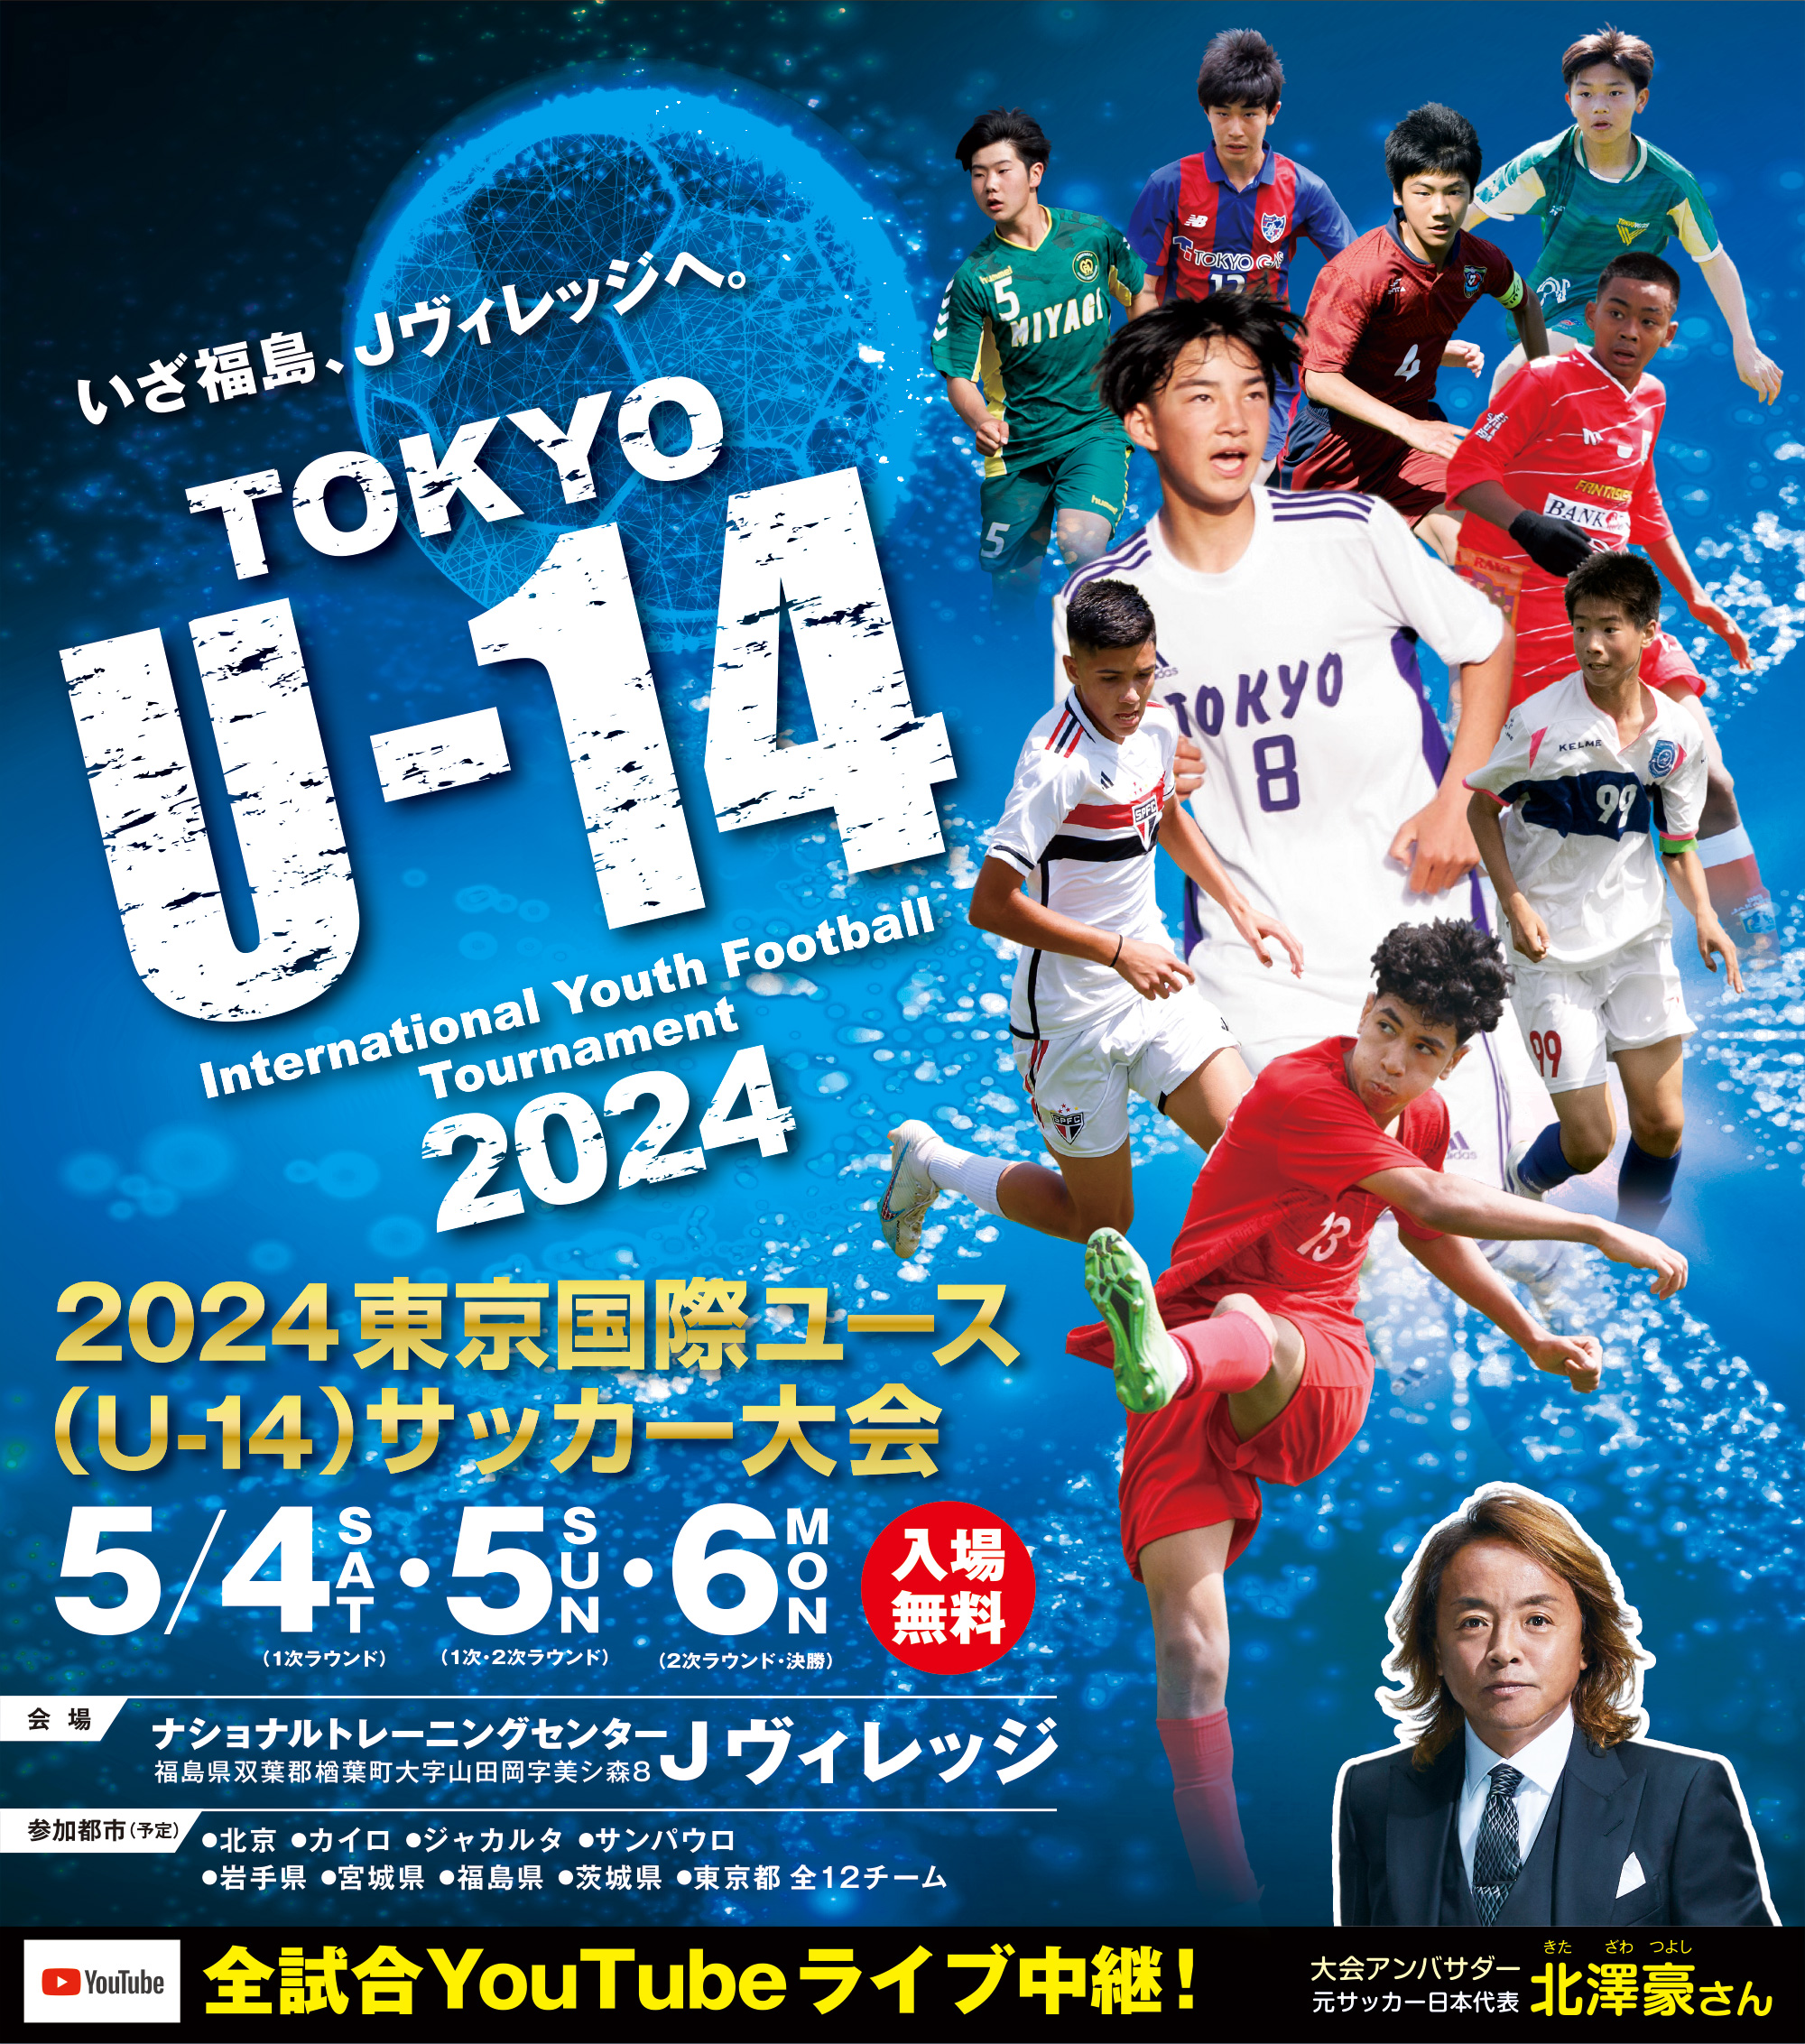 2024東京国際ユース(U-14)サッカー大会 Tokyo U-14 International Youth Football Tournament